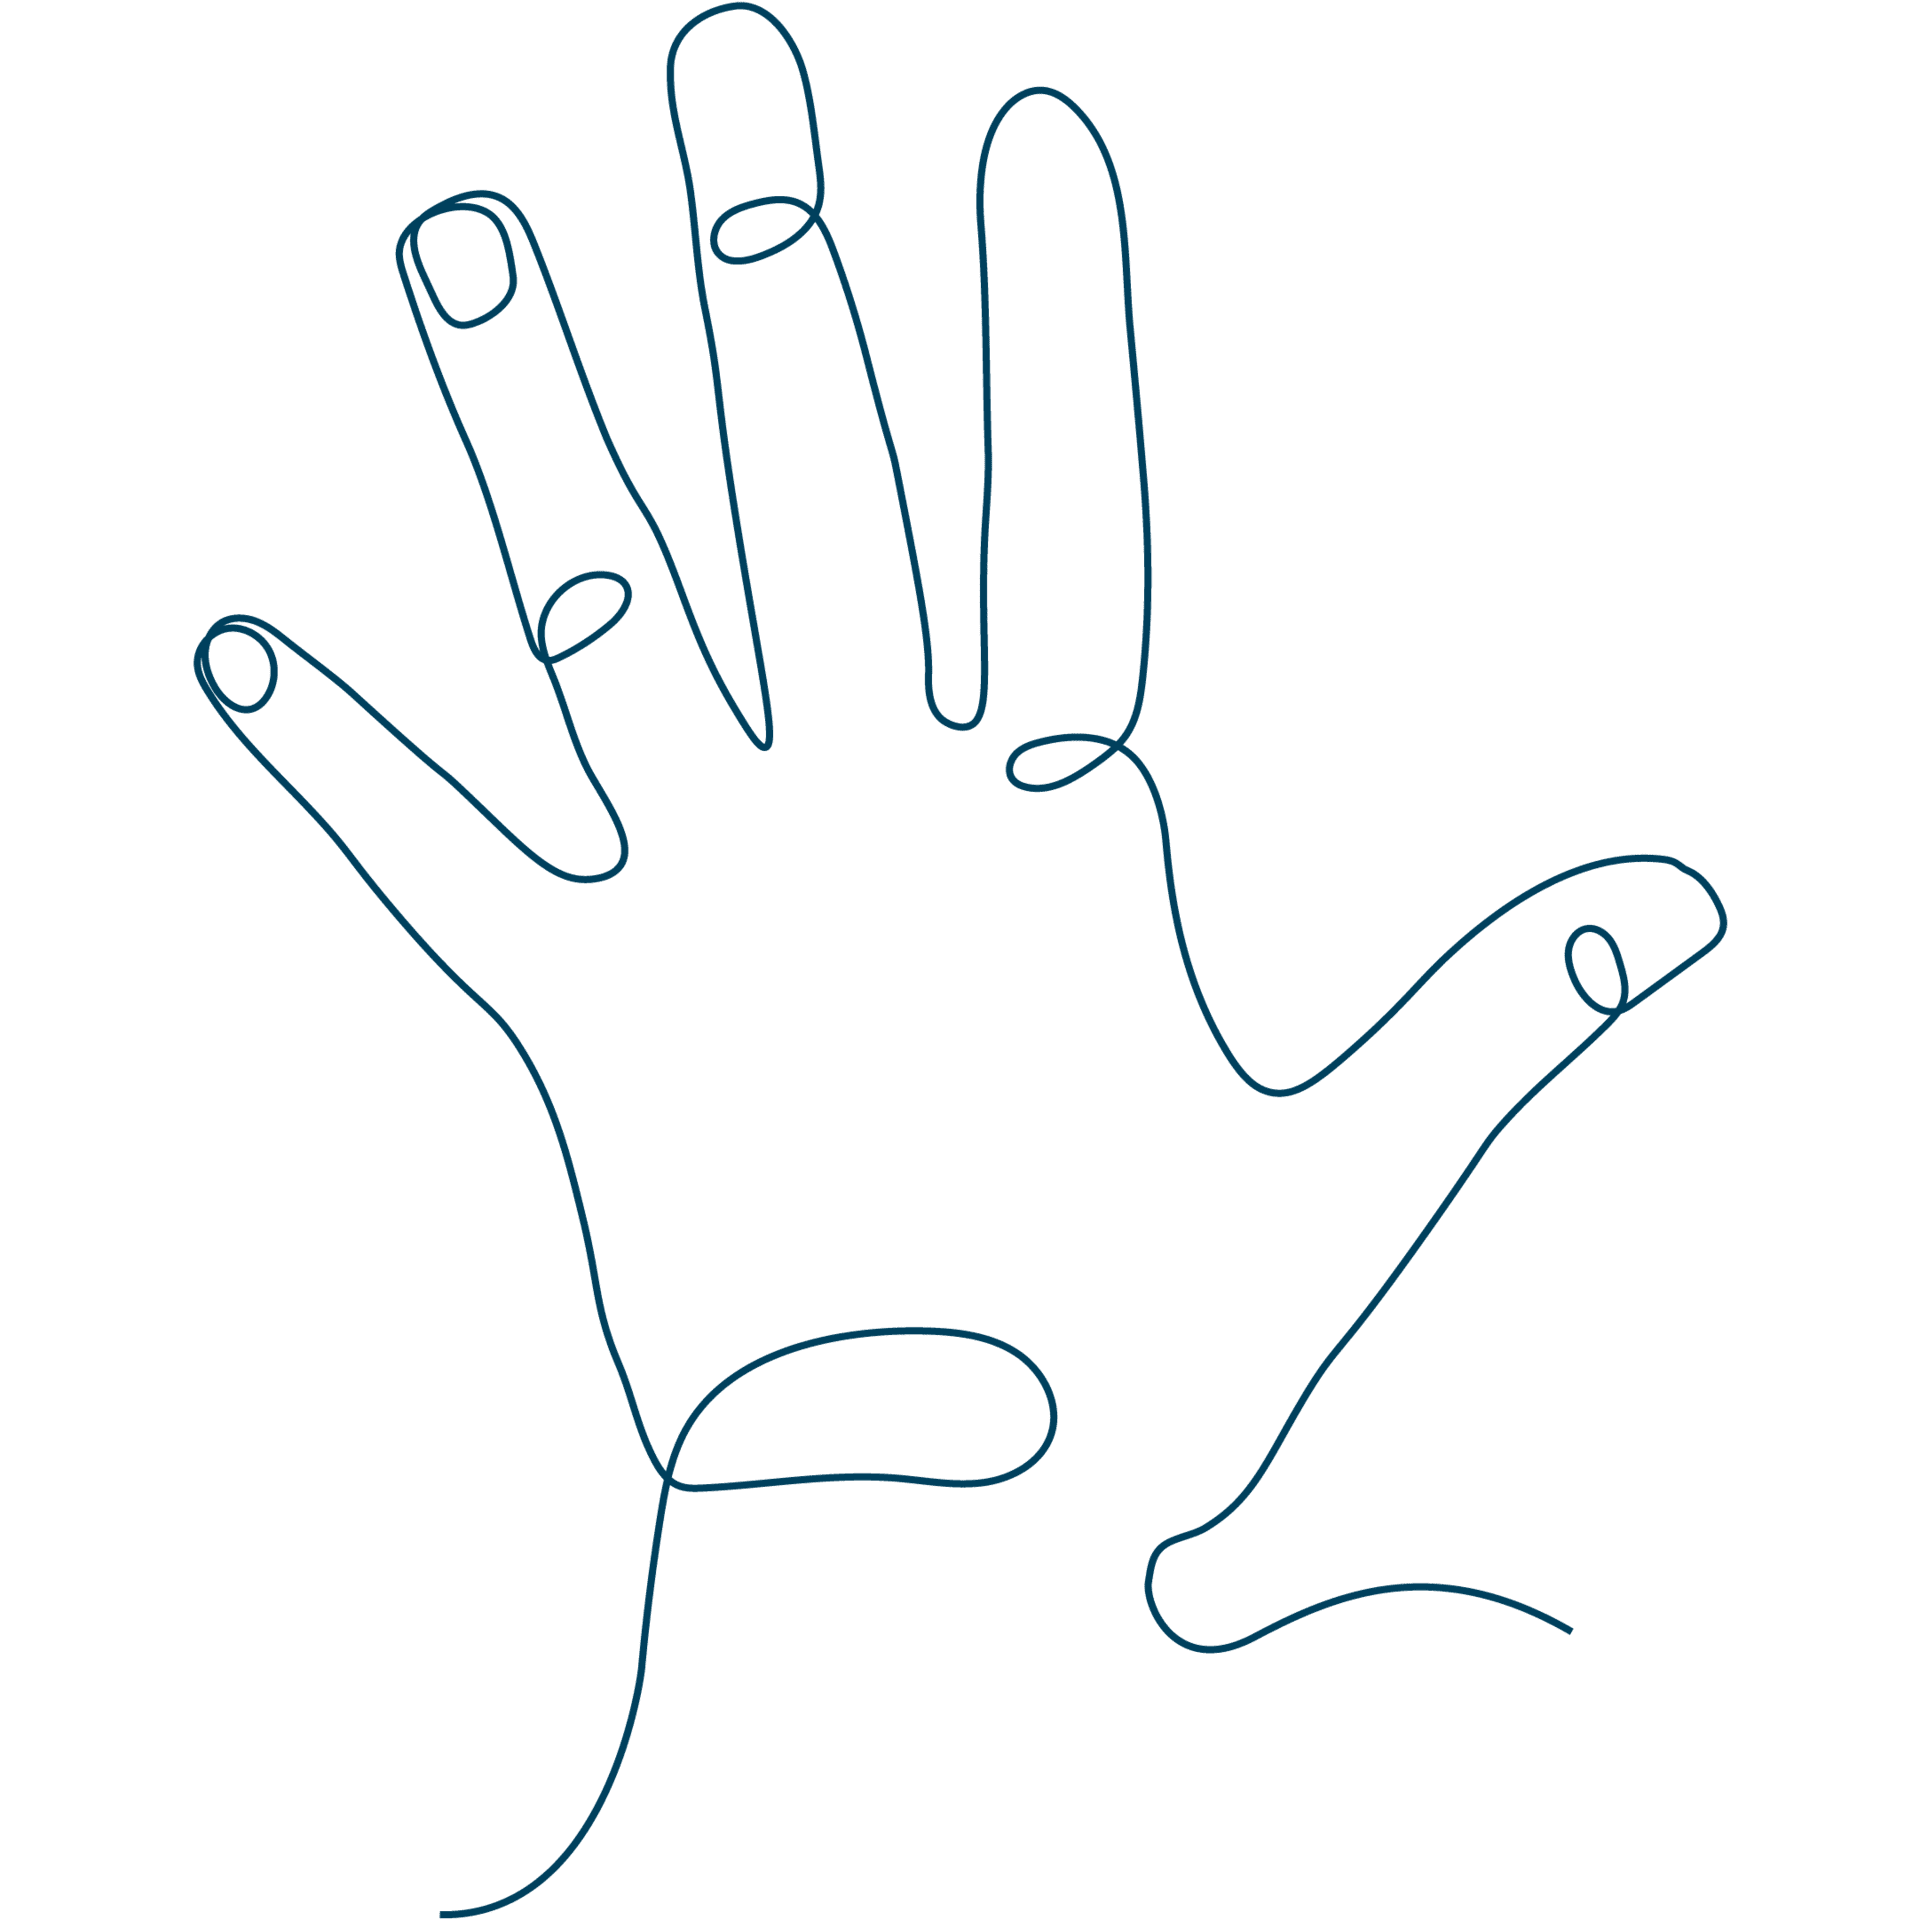 Diese Line-Art-Zeichnung einer Hand bildet den Link zu den Sixtus Hand-Produkten.